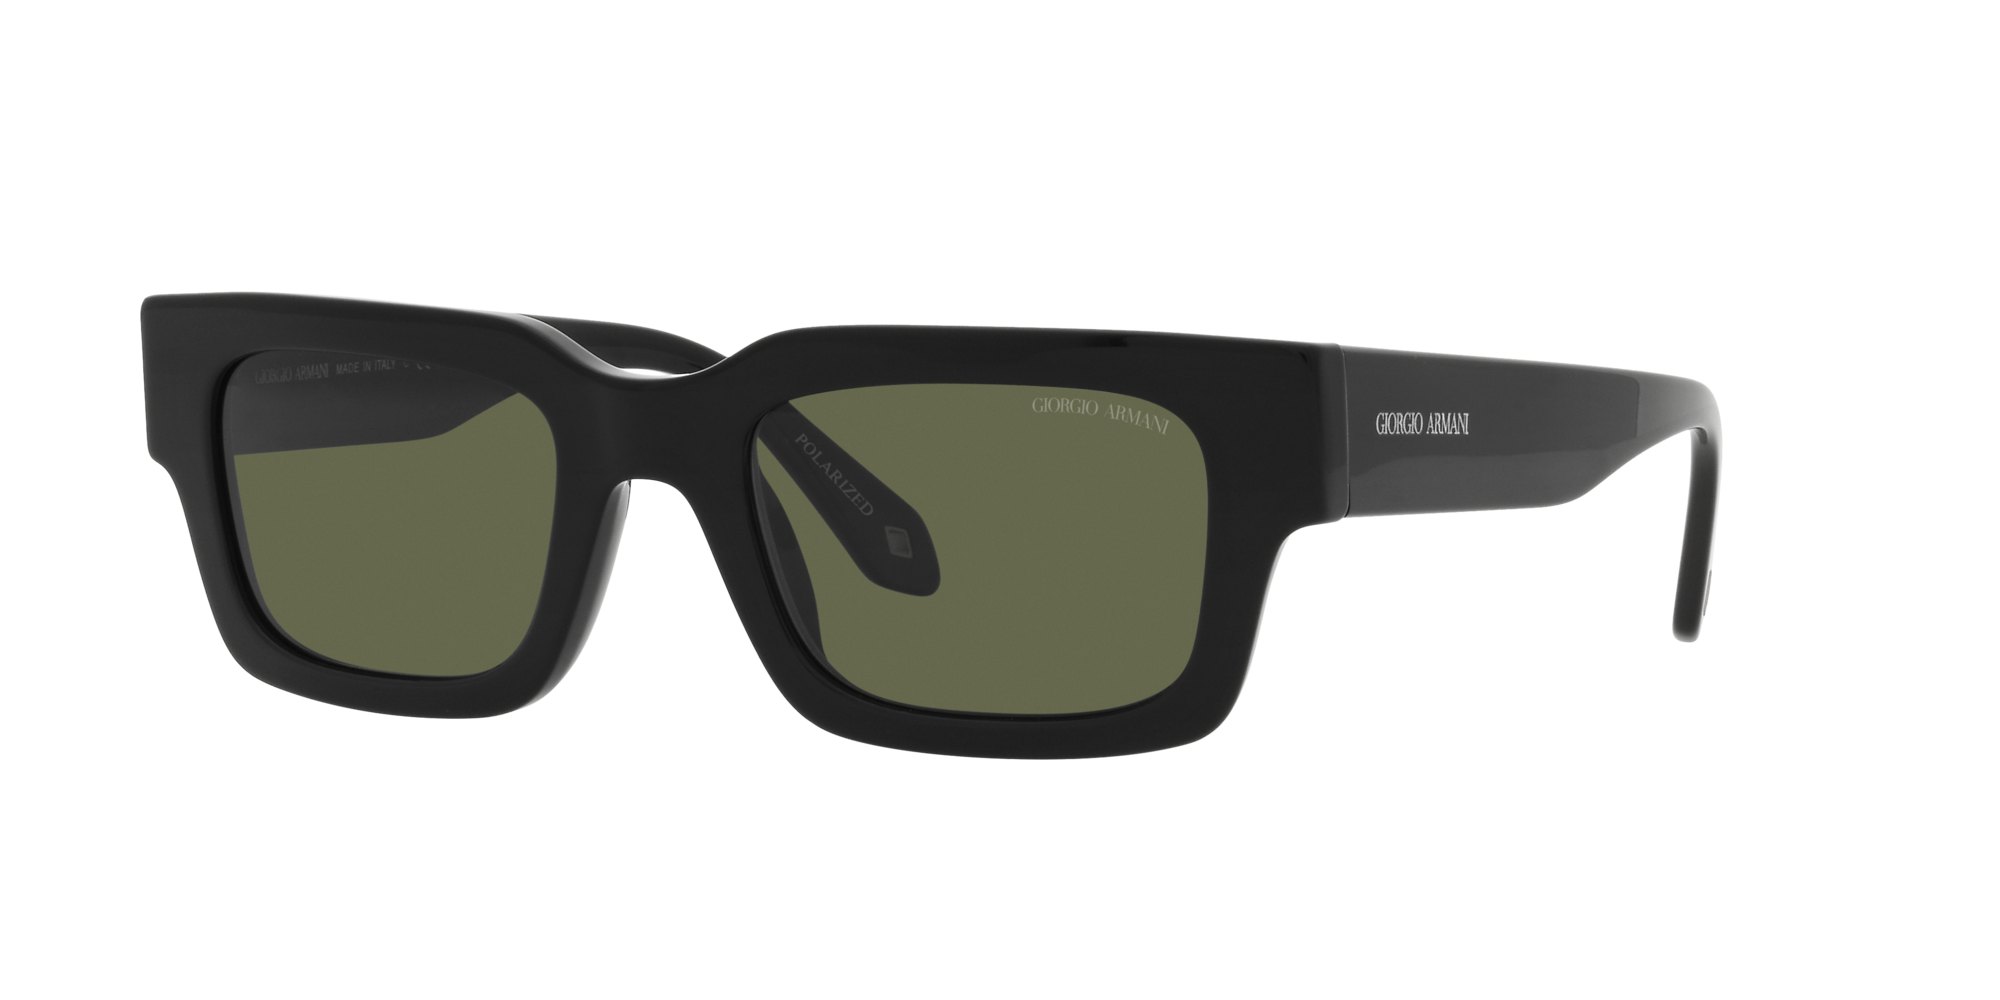 Sunglasses Giorgio Armani Grey in Plastic - 41796690